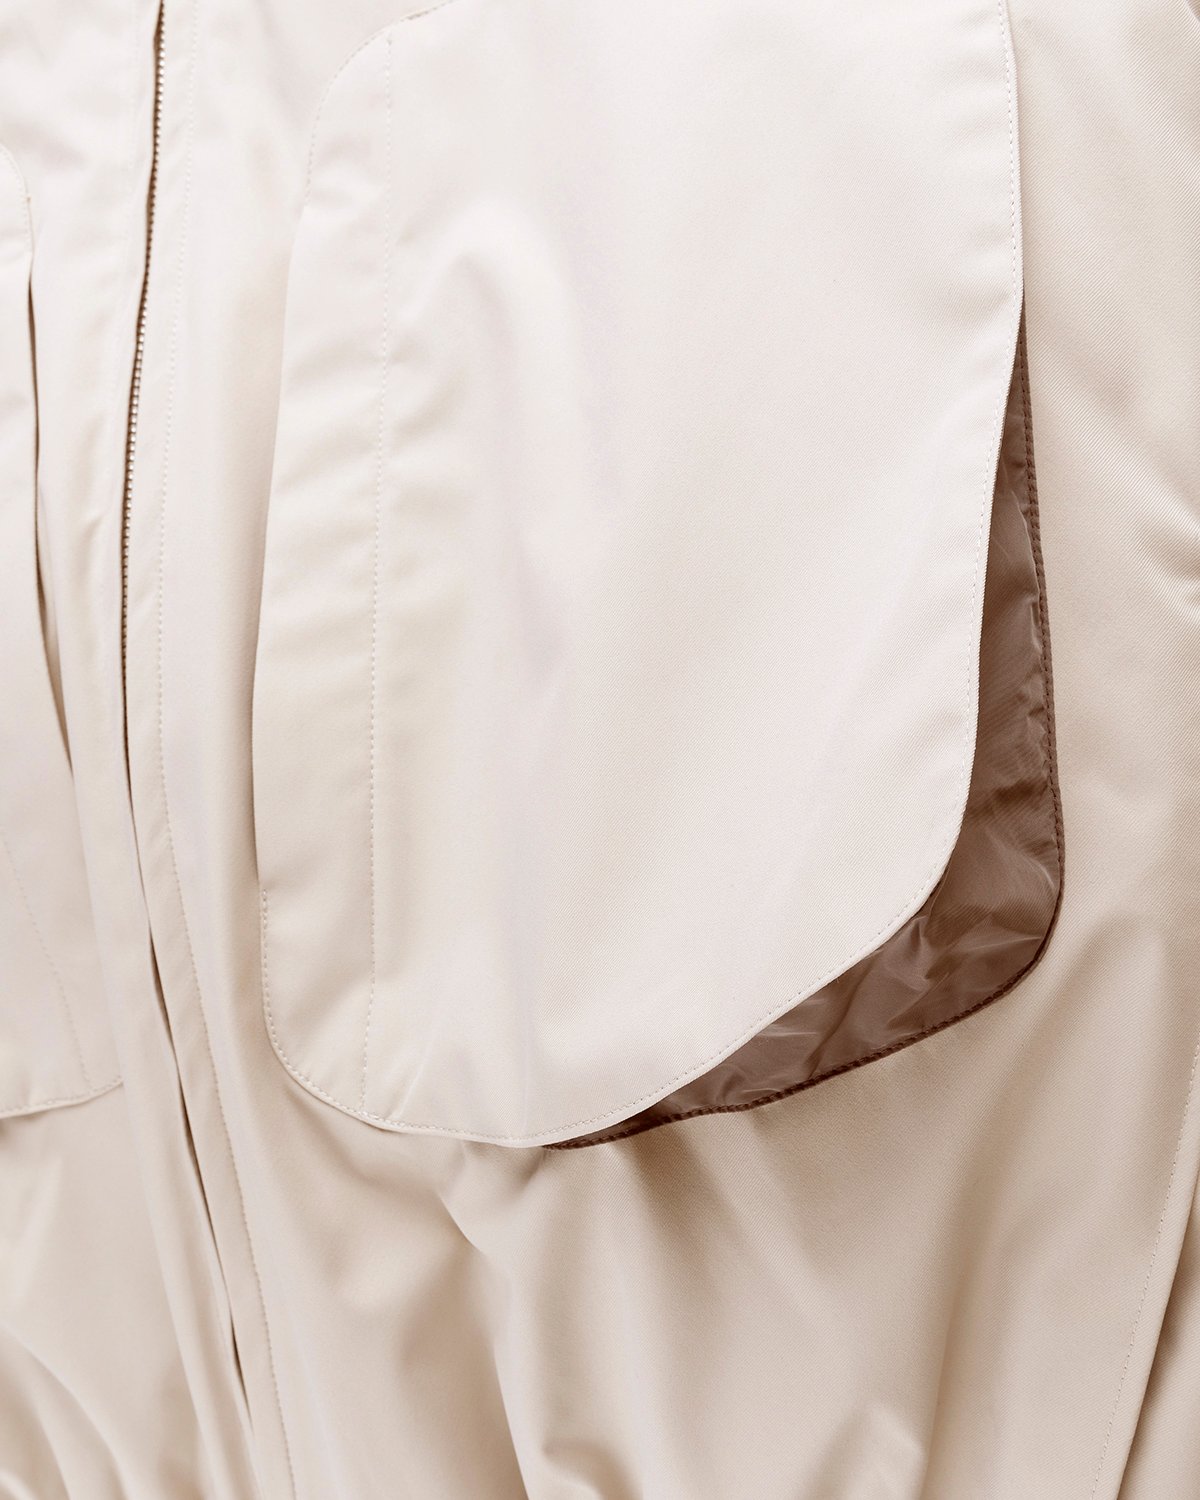 Arnar Mar Jonsson - Sympatex Patch Pocket Outerwear Jacket Beige - Clothing - Beige - Image 4